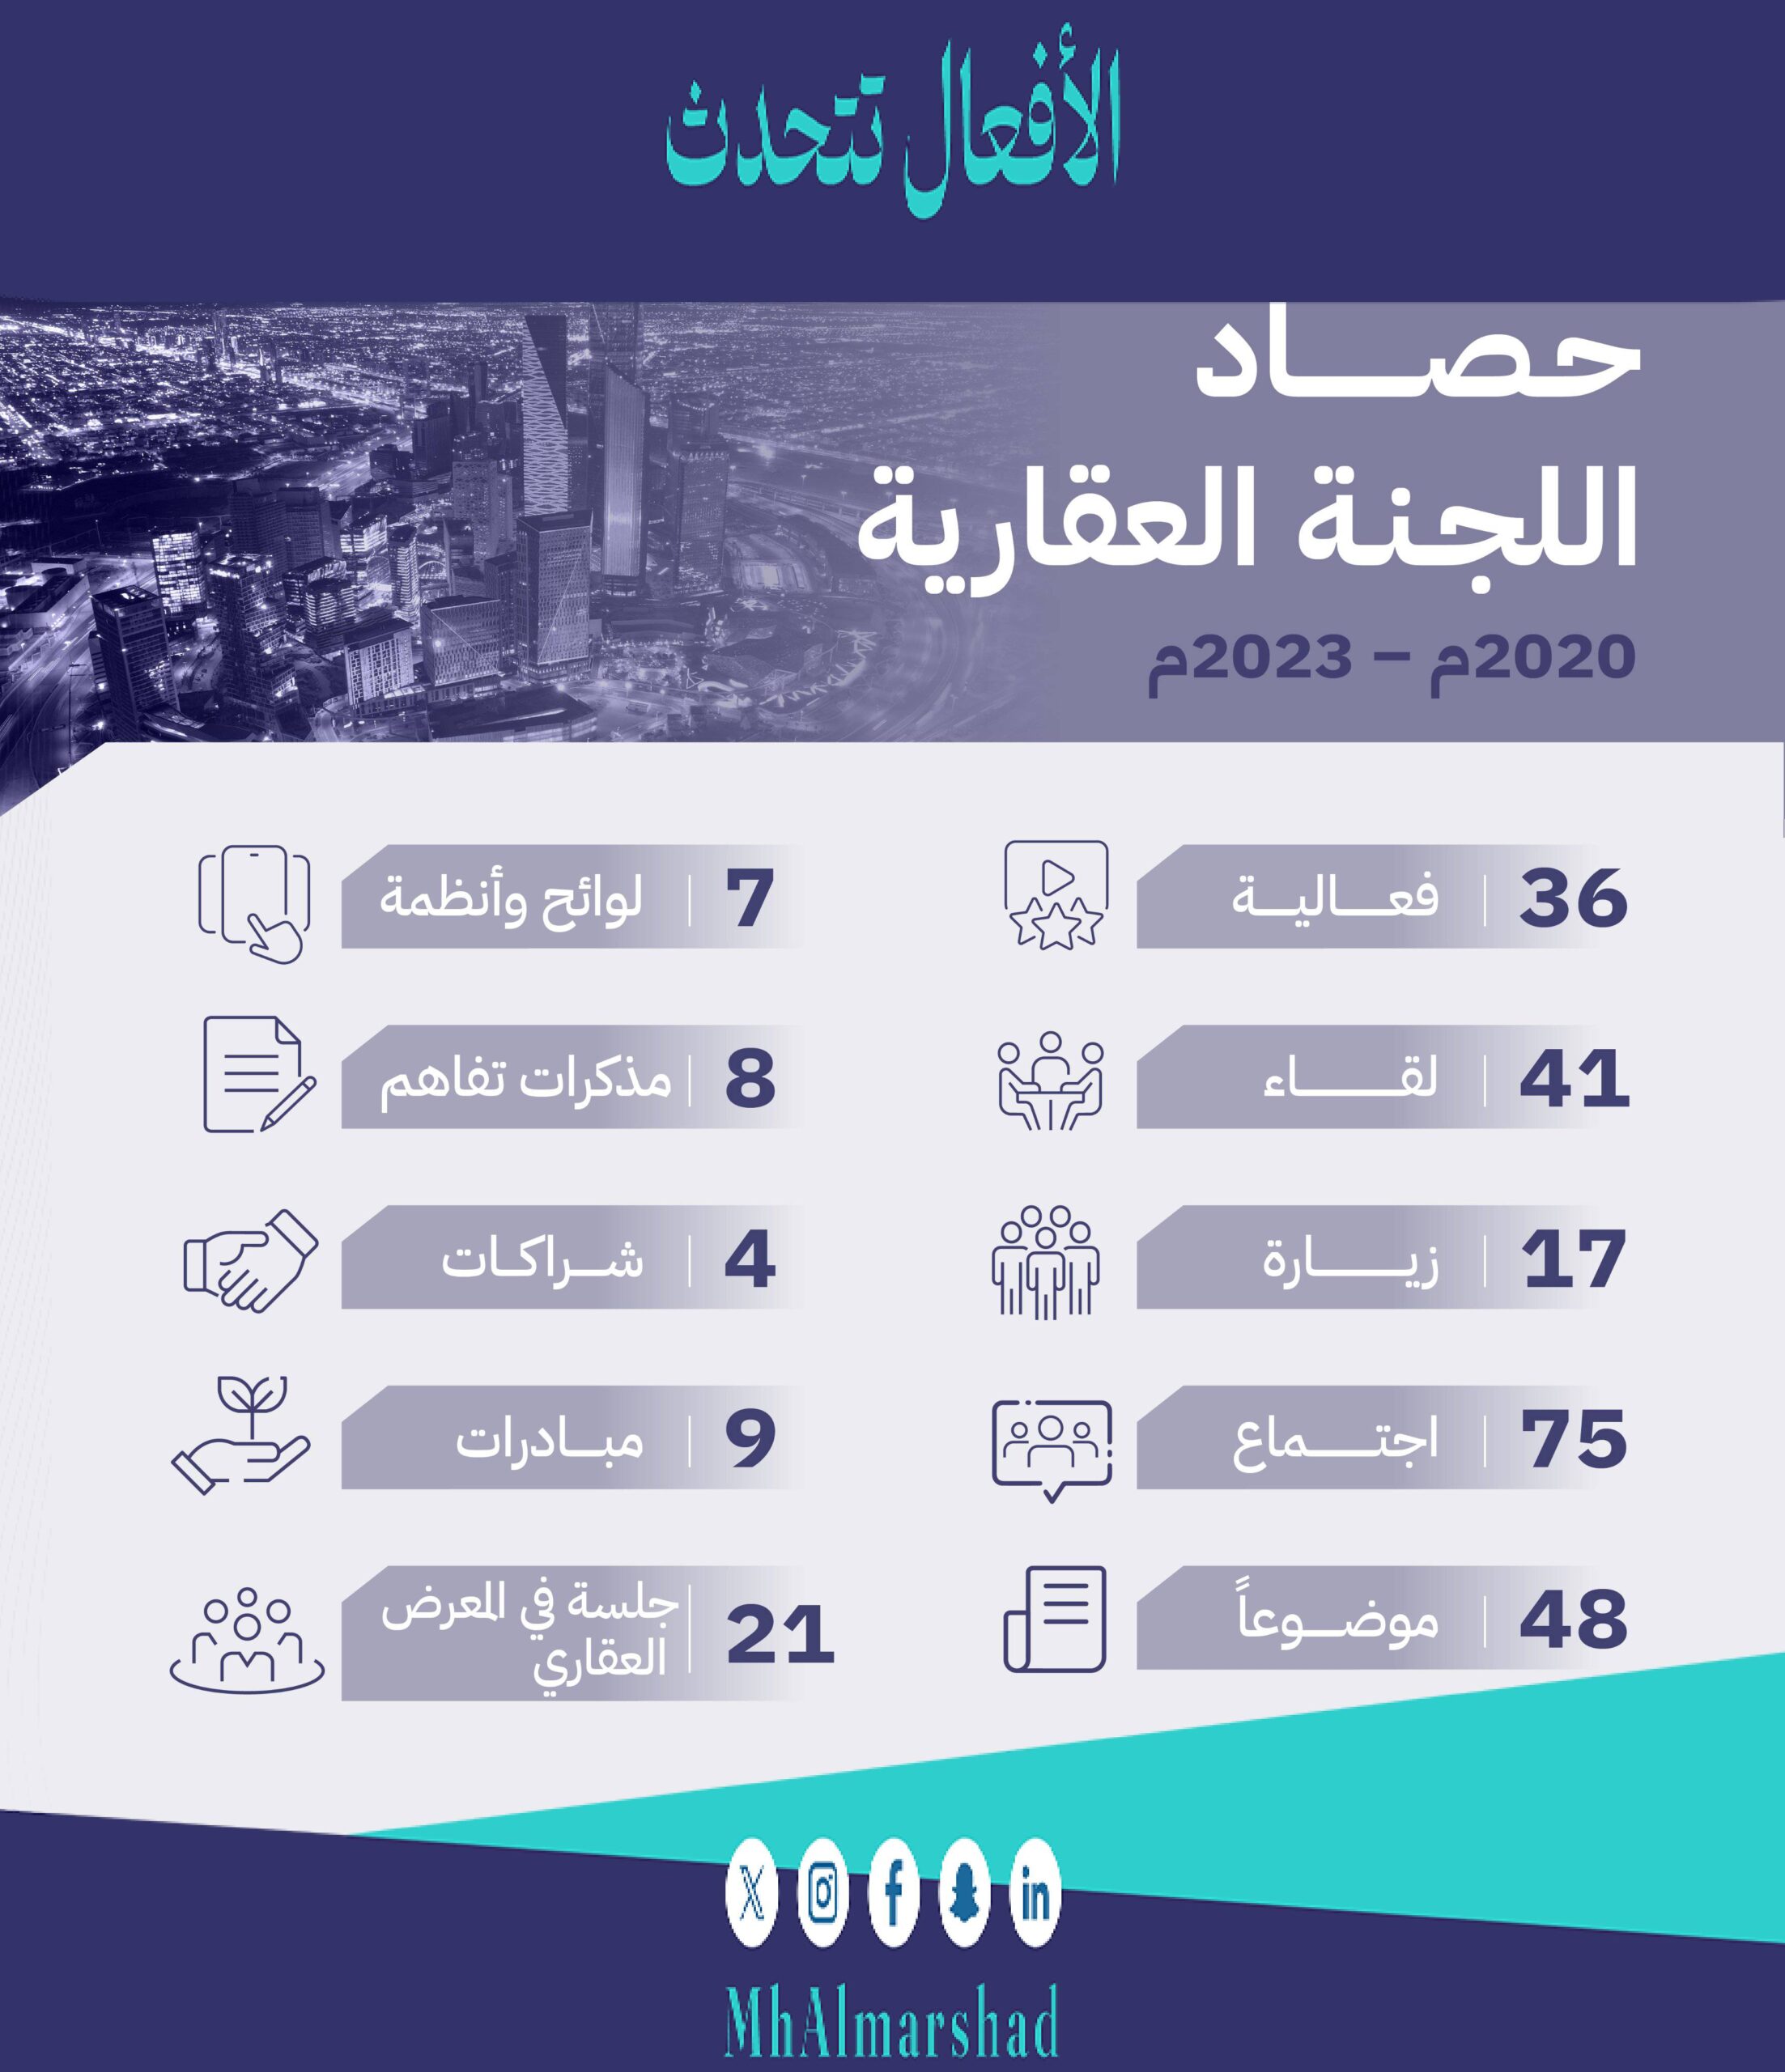 حصاد اللجنة العقارية بـ #غرفة_الرياض (2020 – 2023)م